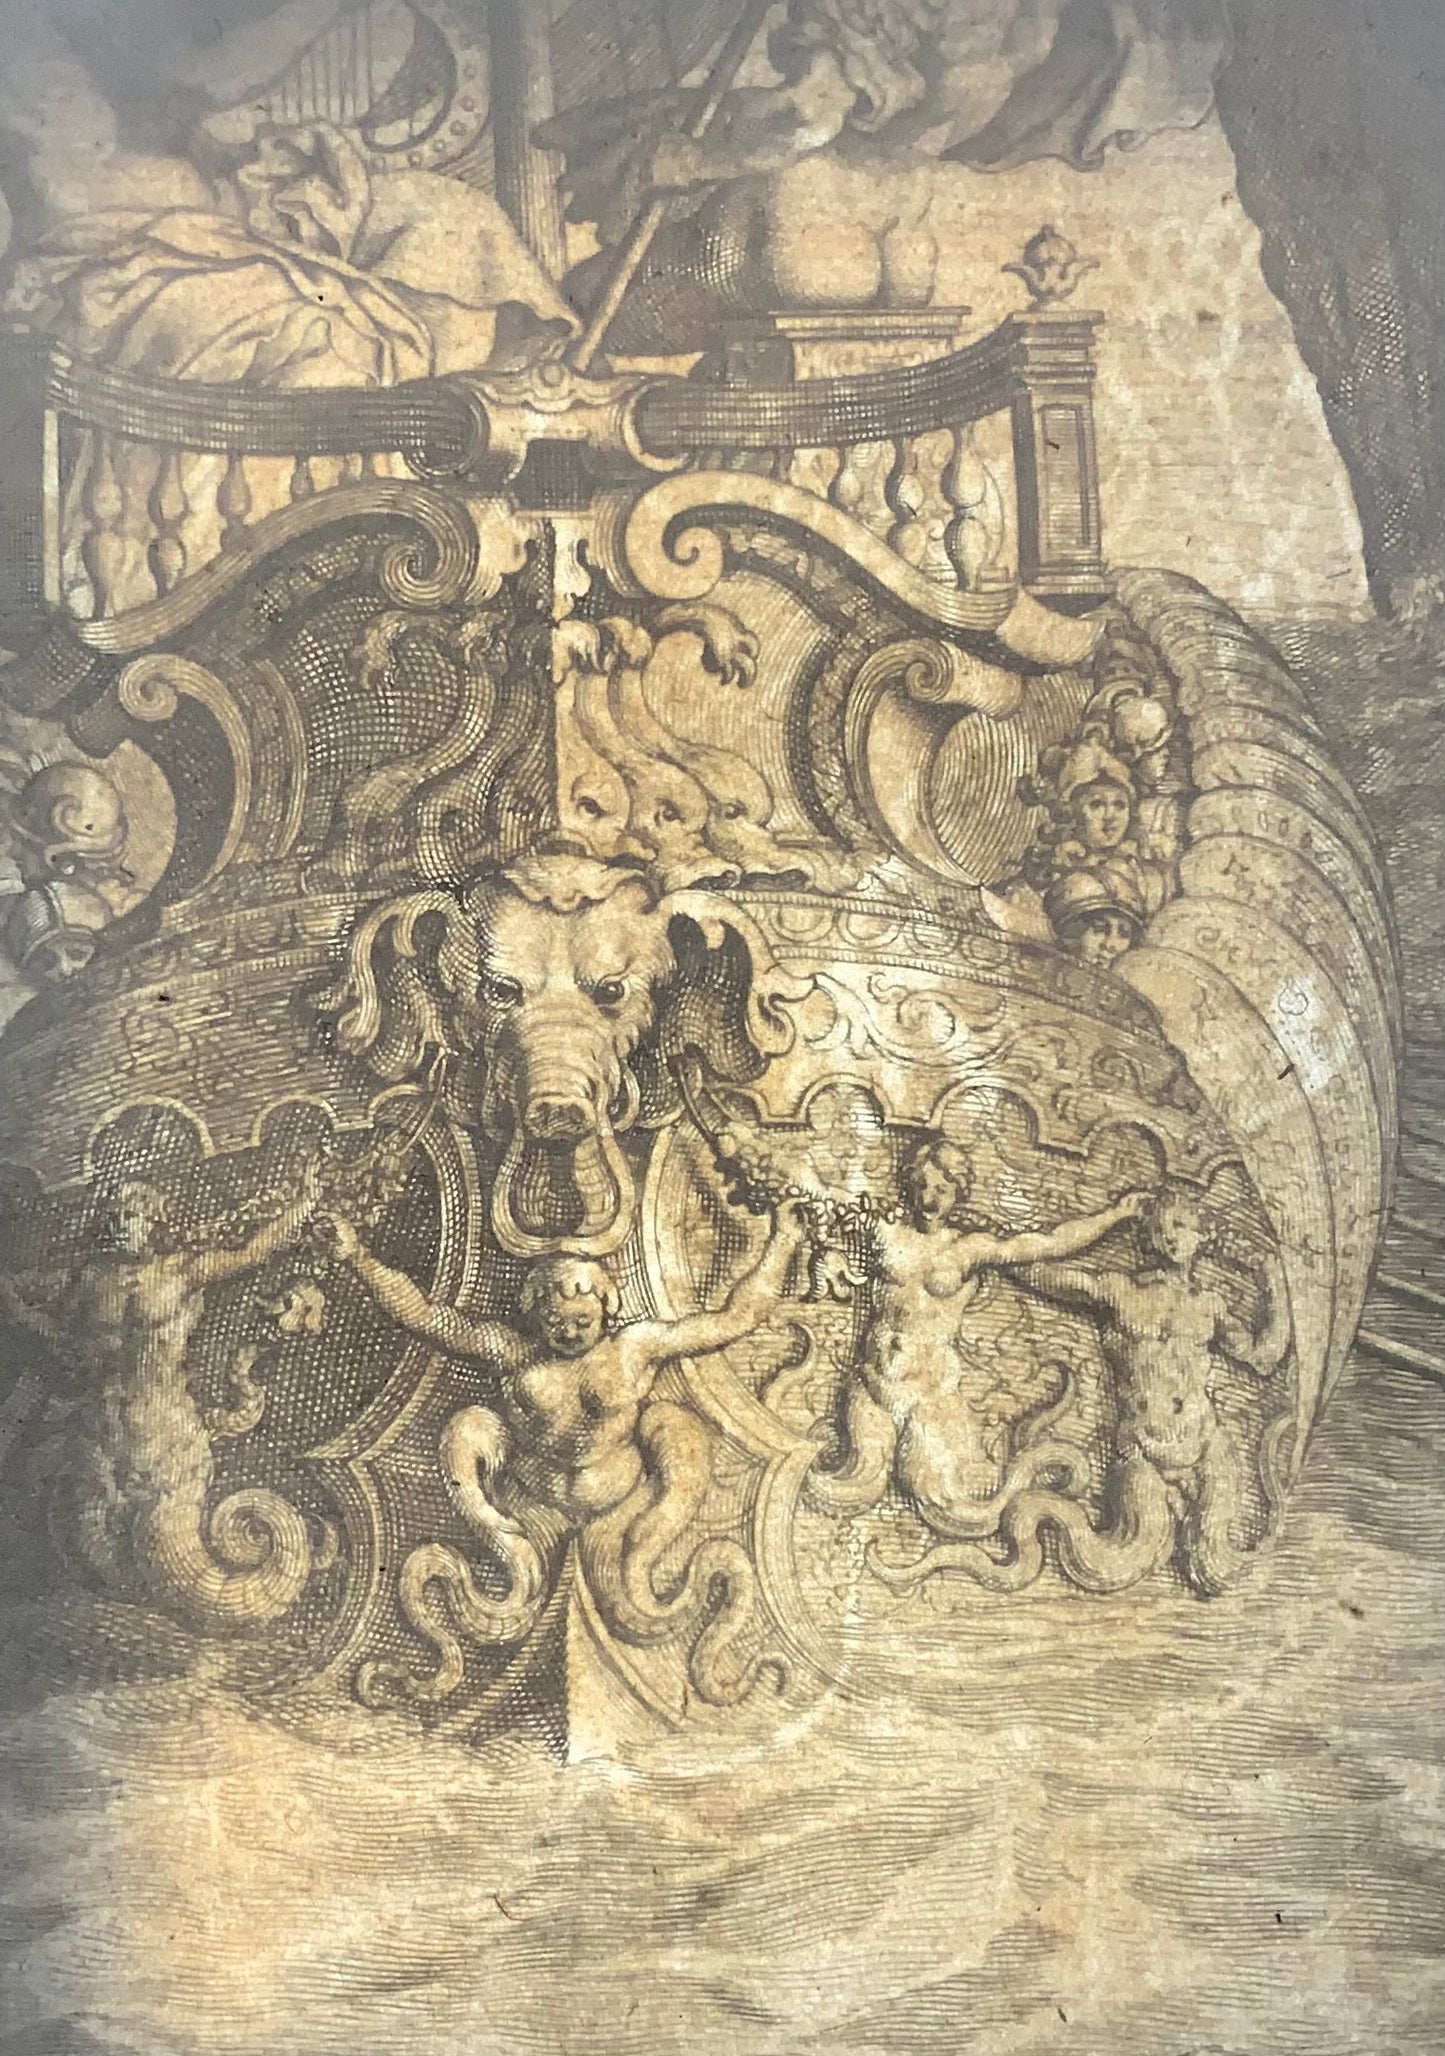 1630 Symplegades, Cornelis Bloemaert (1603-1692) d'après Pierre Brebiette, folio, art classique 